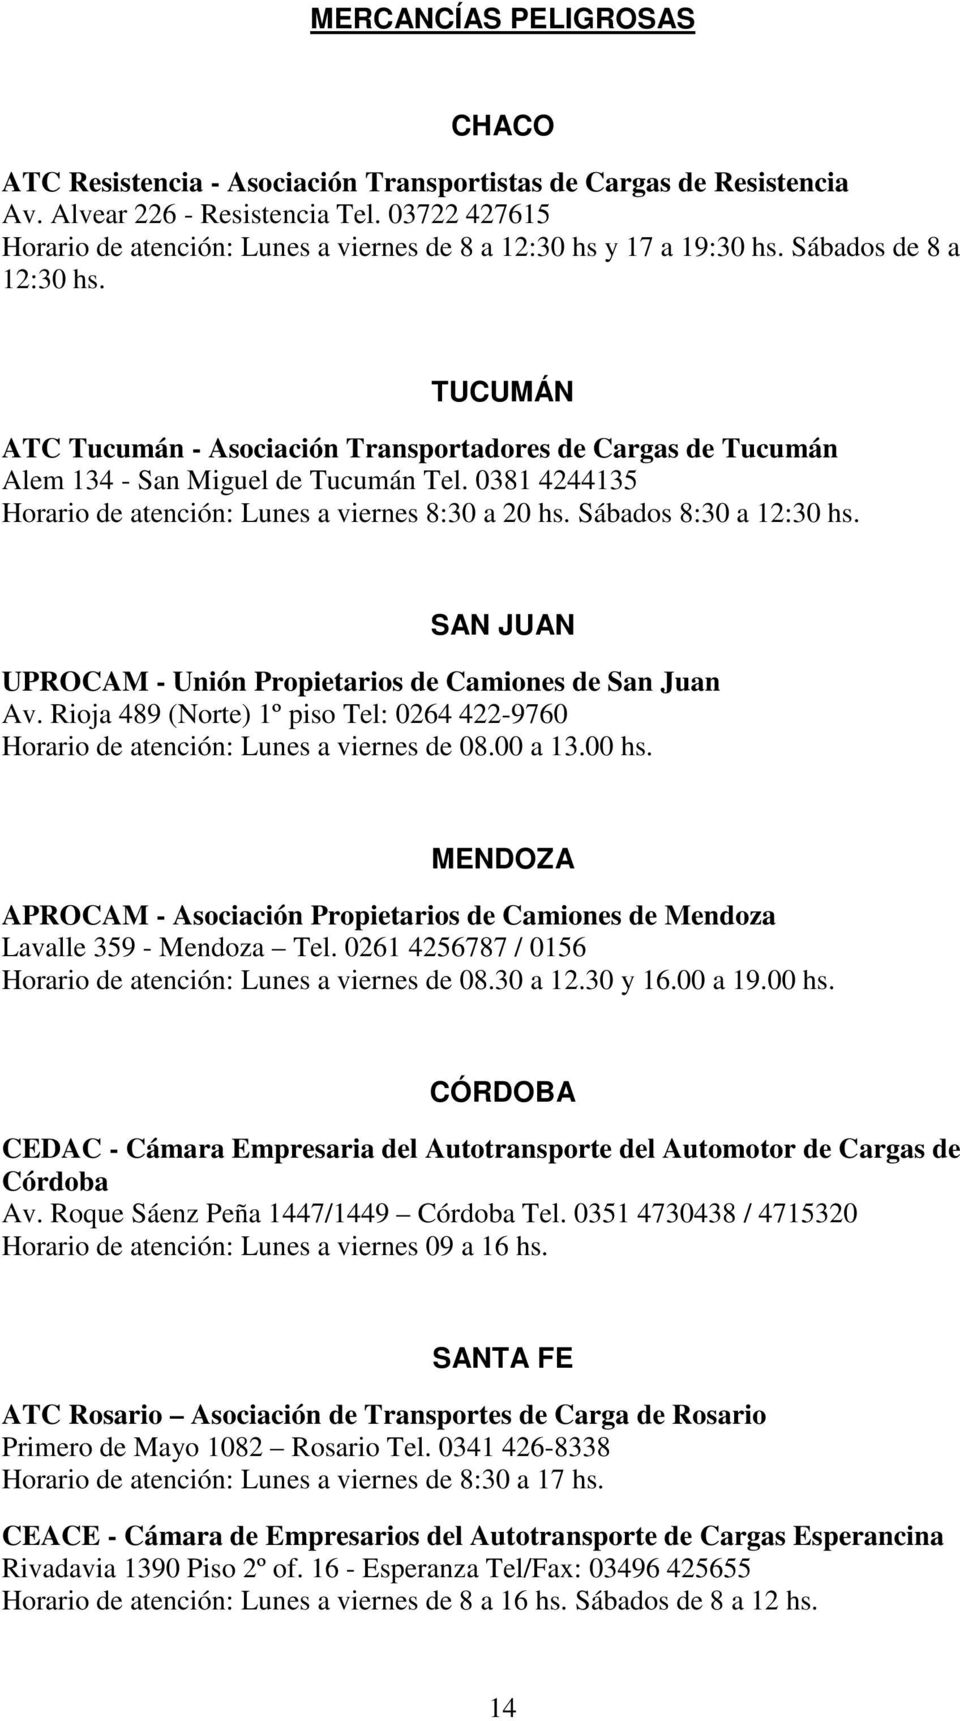 TUCUMÁN ATC Tucumán - Asociación Transportadores de Cargas de Tucumán Alem 134 - San Miguel de Tucumán Tel. 0381 4244135 Horario de atención: Lunes a viernes 8:30 a 20 hs. Sábados 8:30 a 12:30 hs.